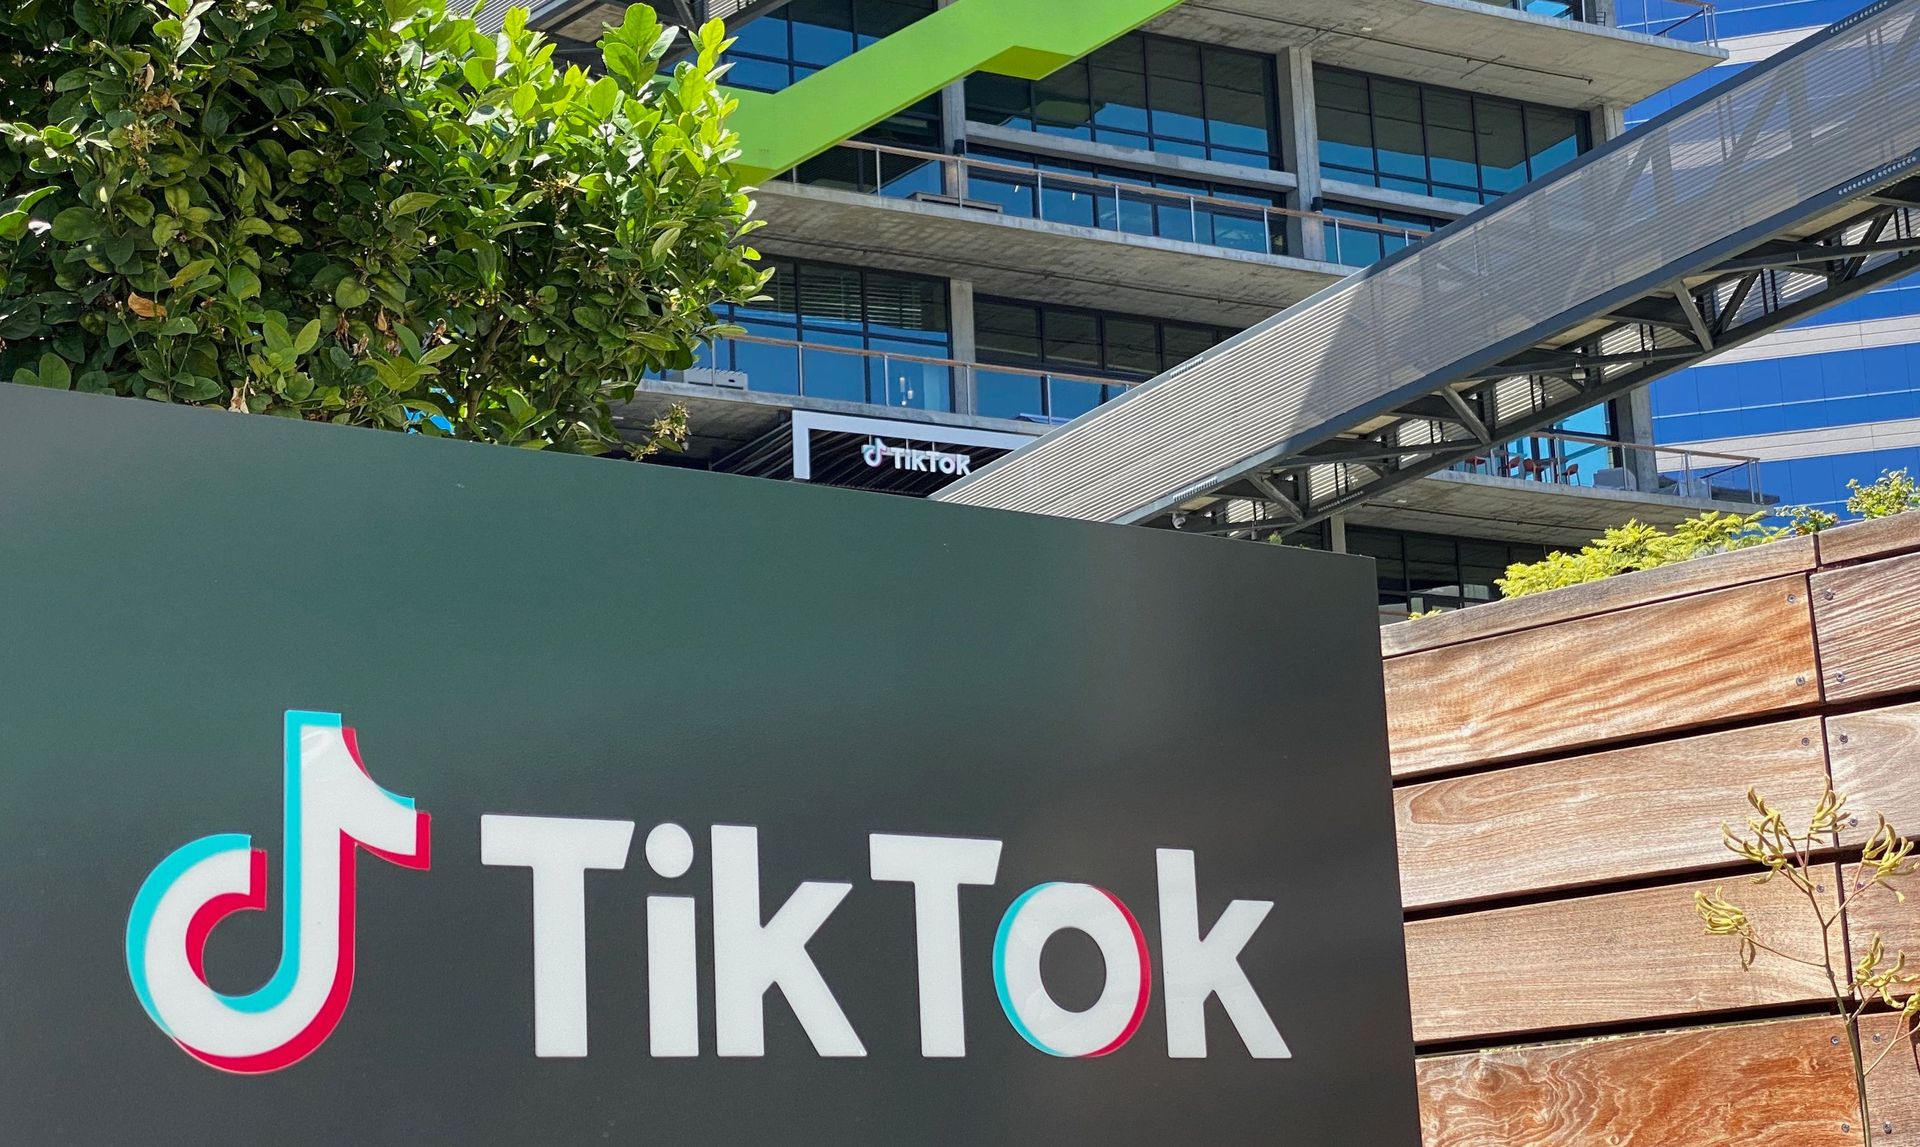 FCC TikTok Apple Google çatışması: FCC, TikTok'un yasaklanmasını istiyor